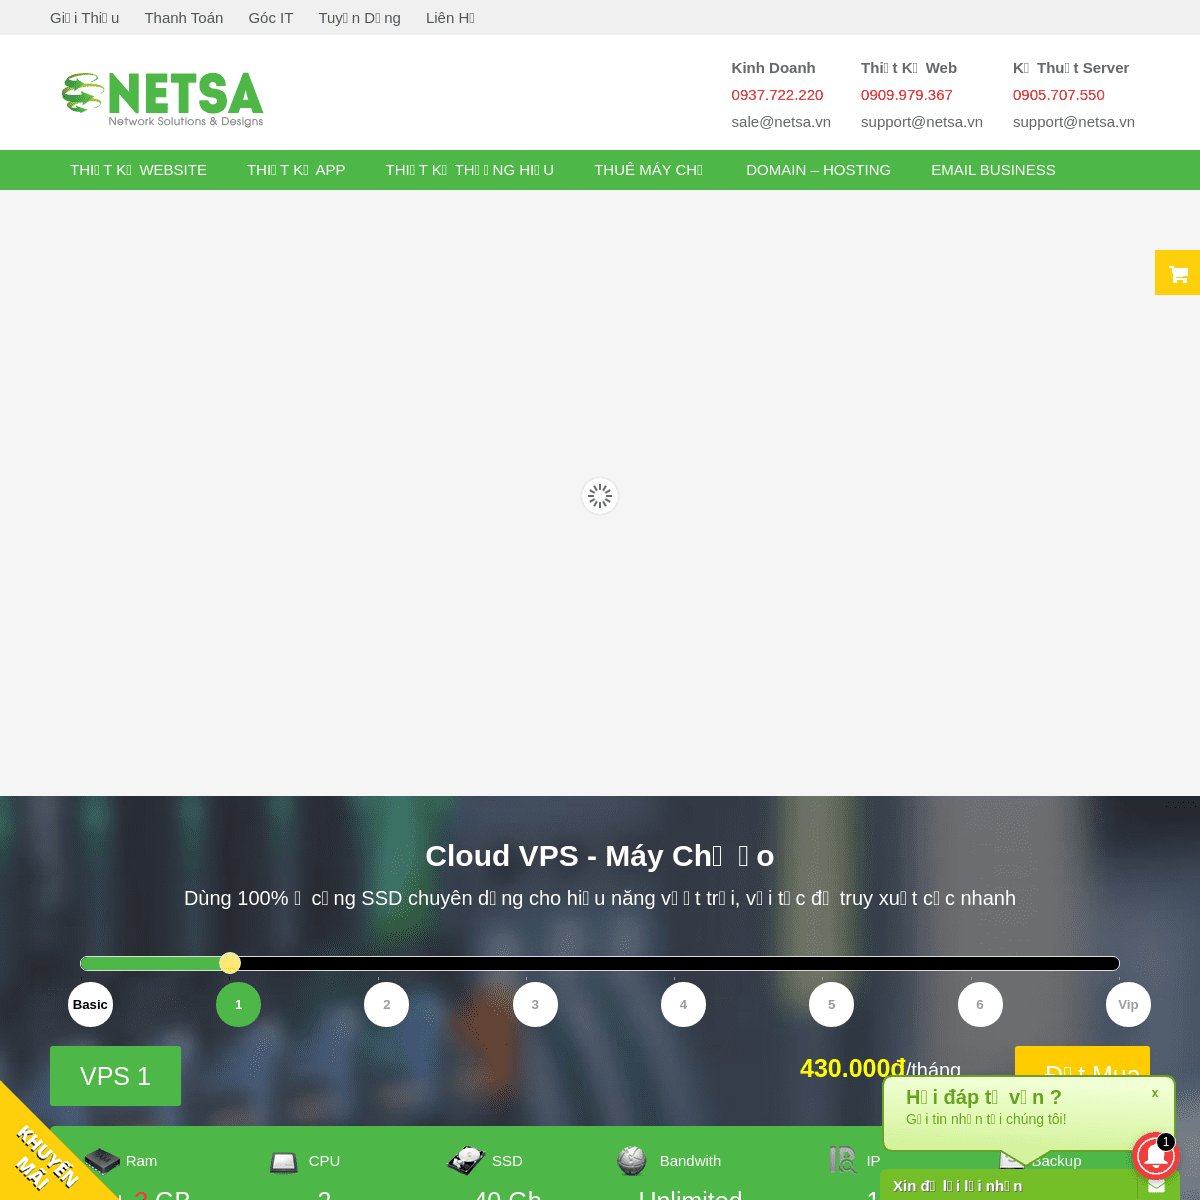 A complete backup of netsa.vn